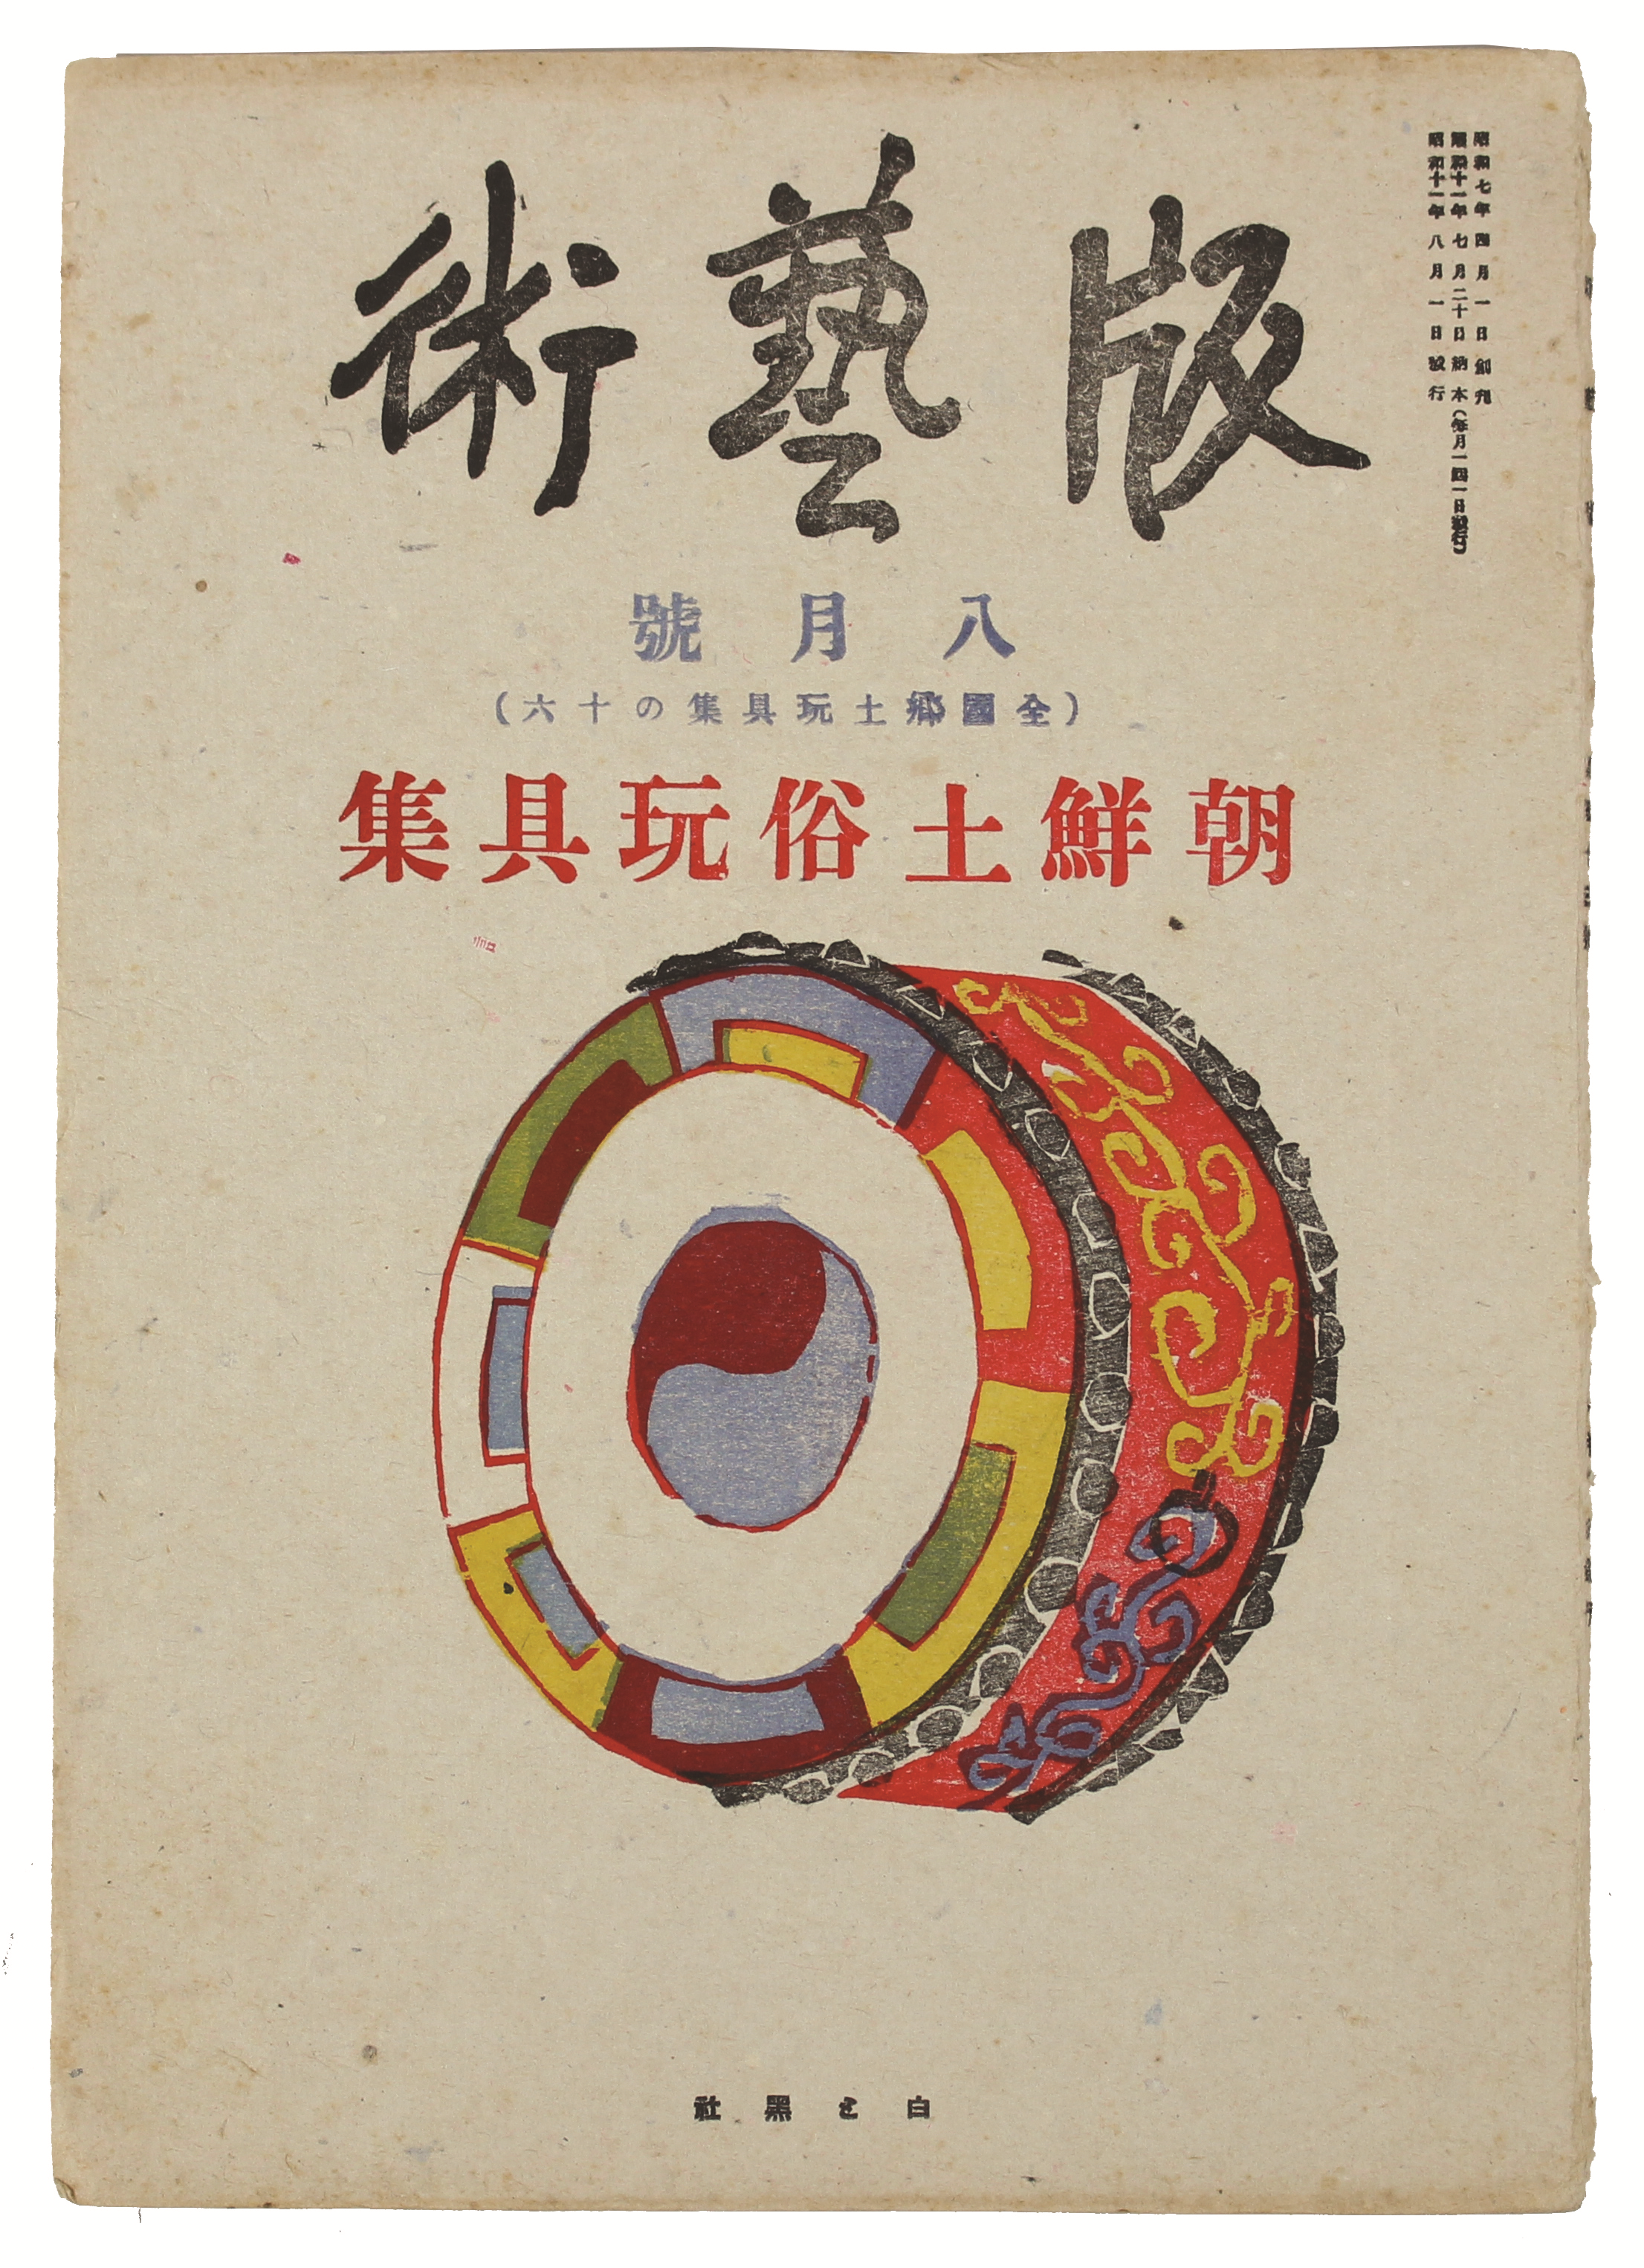 조선토속완구집朝鮮土俗玩具集 1책 (목판화집木版畵集,1936년)